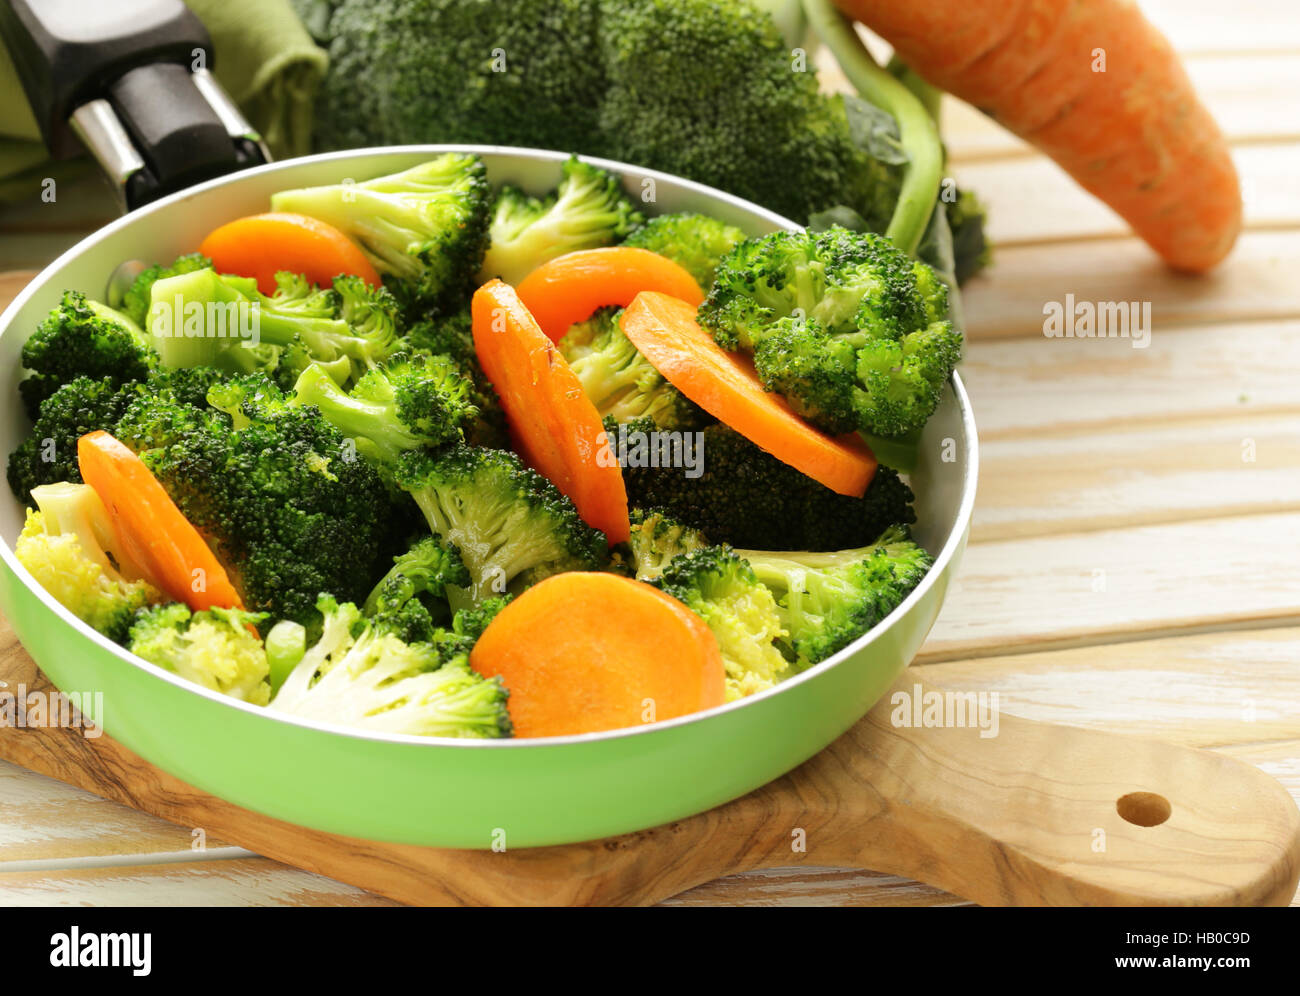 Guarnición de verdura de zanahorias y brócoli verde Foto de stock